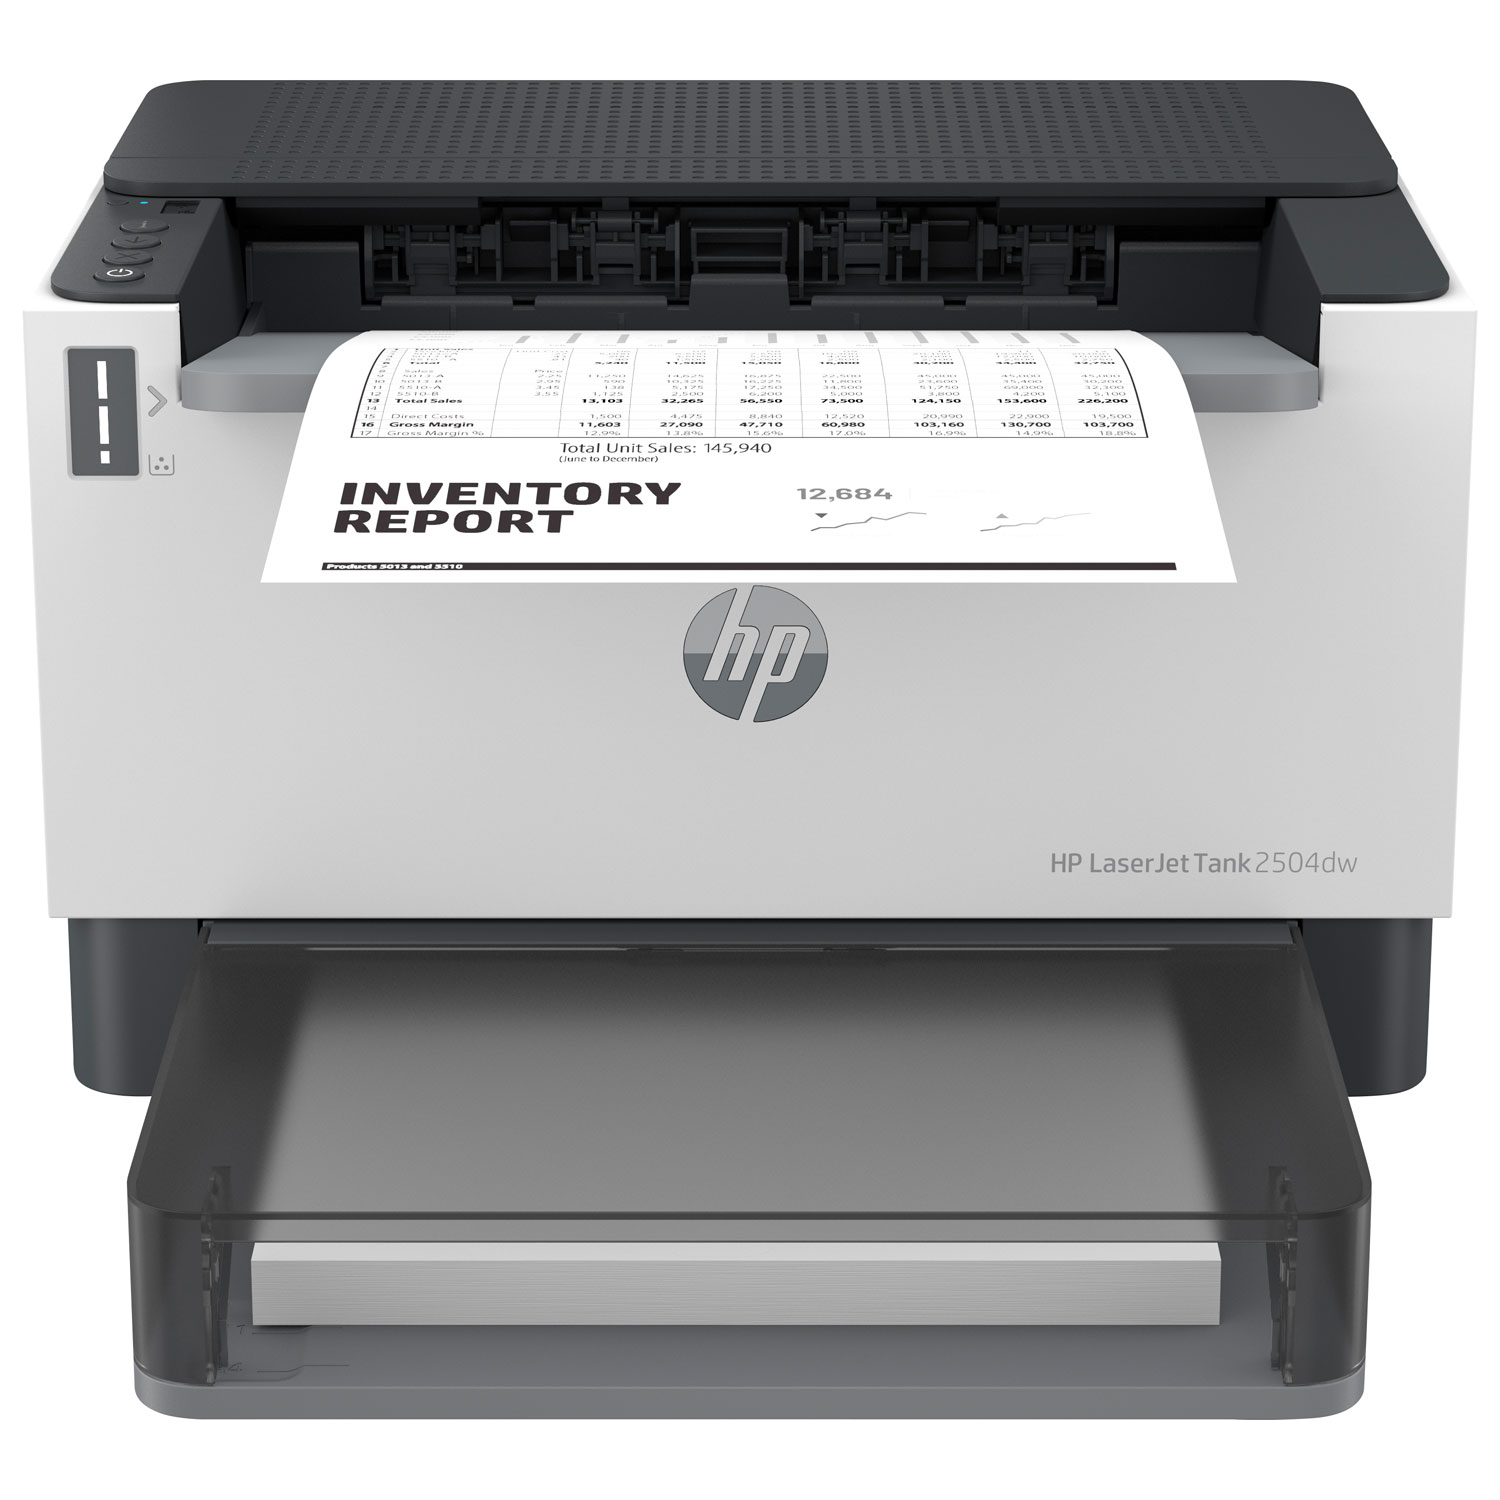 HP LaserJet 2504dw Monochrome Laser Printer